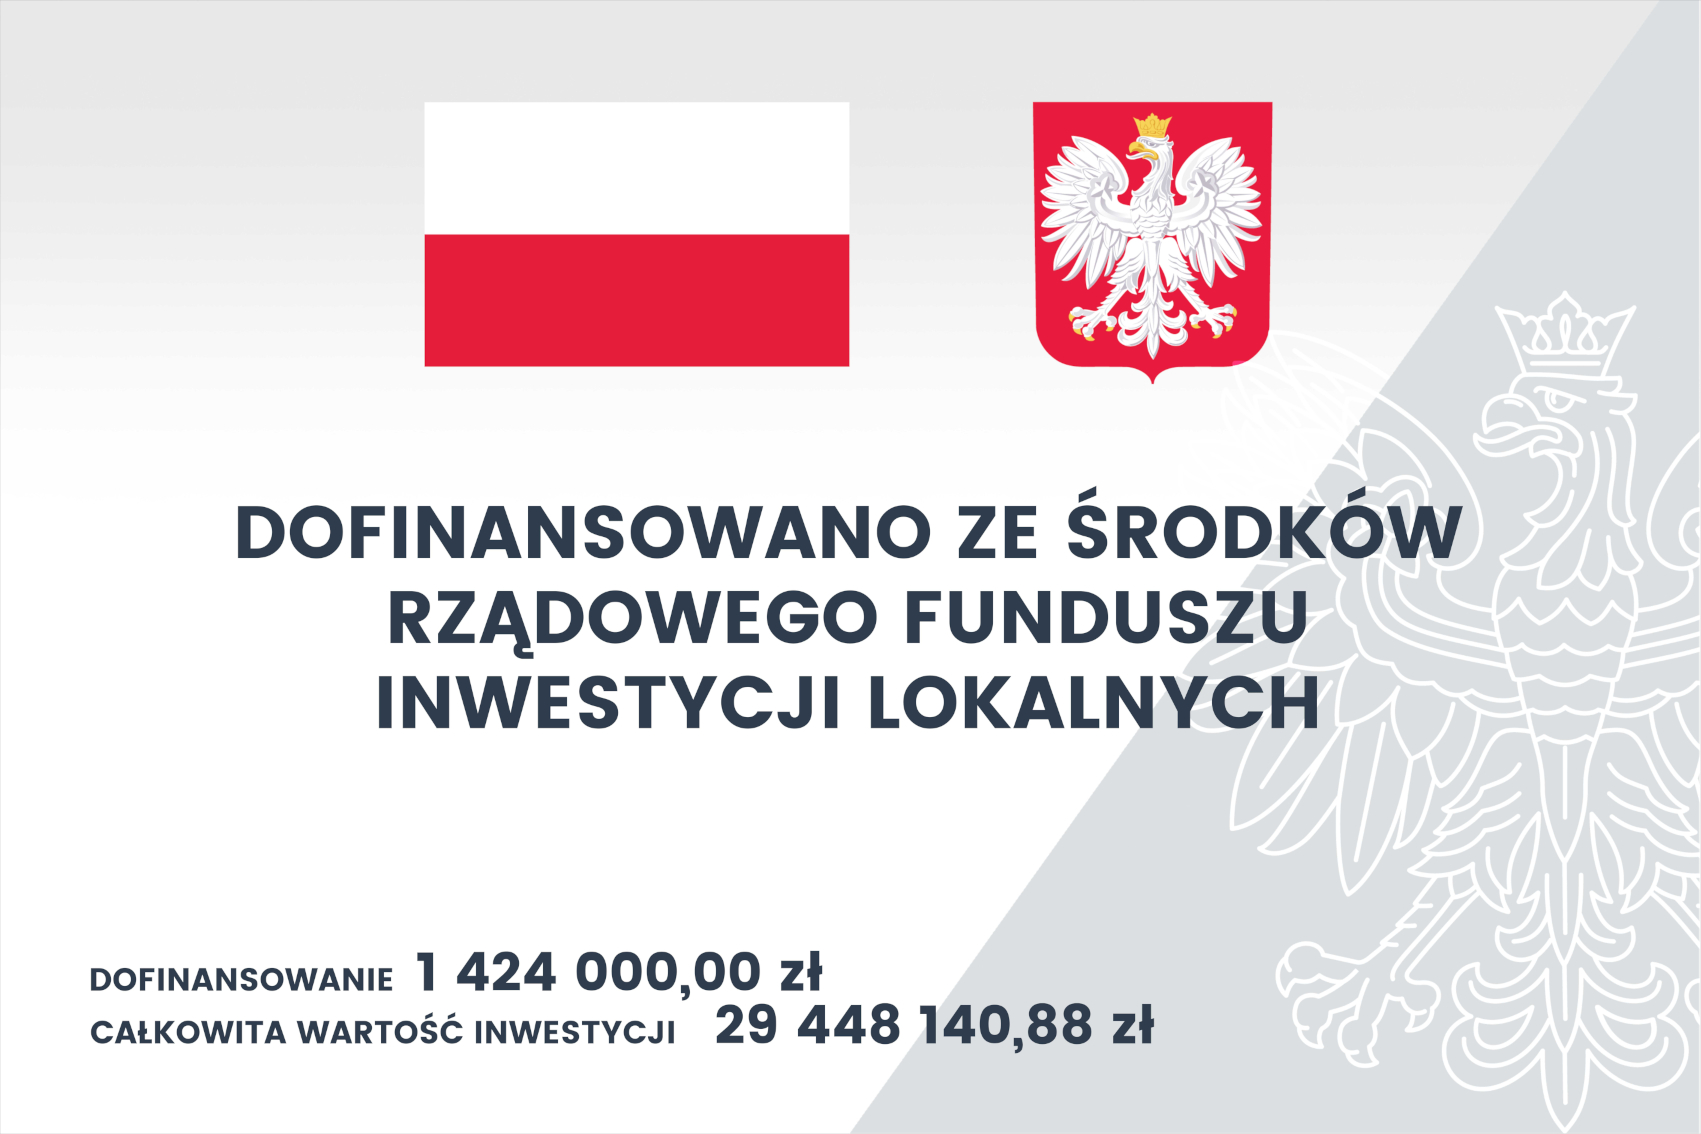 Flaga i Godło Polski poniżej napis dofinansowano ze środków rządowego funduszu inwestycji lokalnych, dofinansowanie 1 424 000, 00 zł; całkowita wartość inwestycji 29 448 140,88 zł